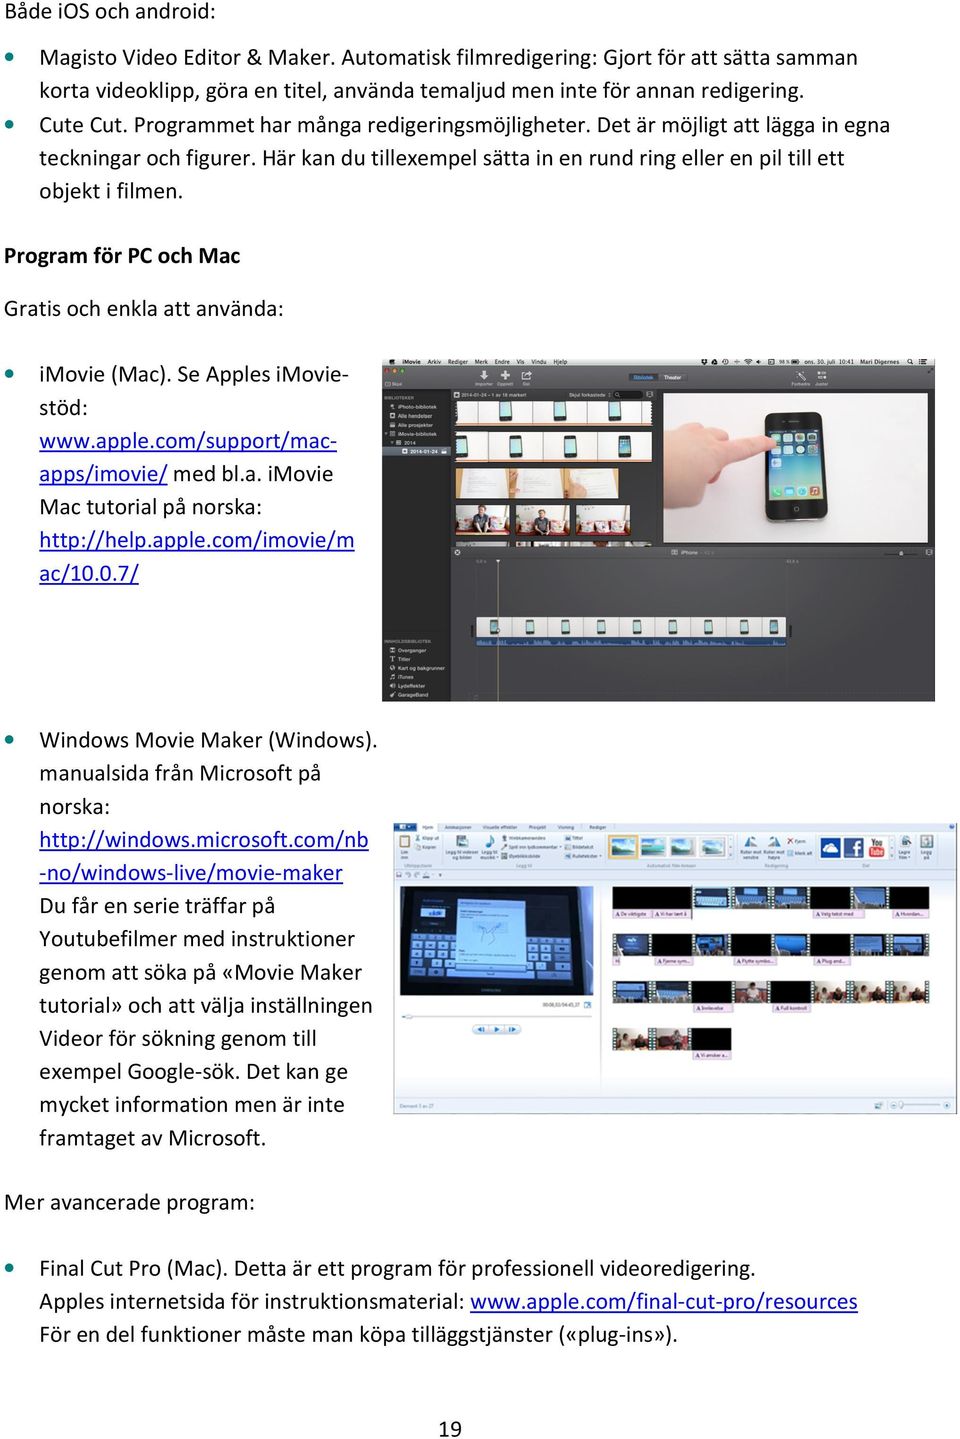 Program för PC och Mac Gratis och enkla att använda: imovie (Mac). Se Apples imoviestöd: www.apple.com/support/macapps/imovie/ med bl.a. imovie Mac tutorial på norska: http://help.apple.com/imovie/m ac/10.